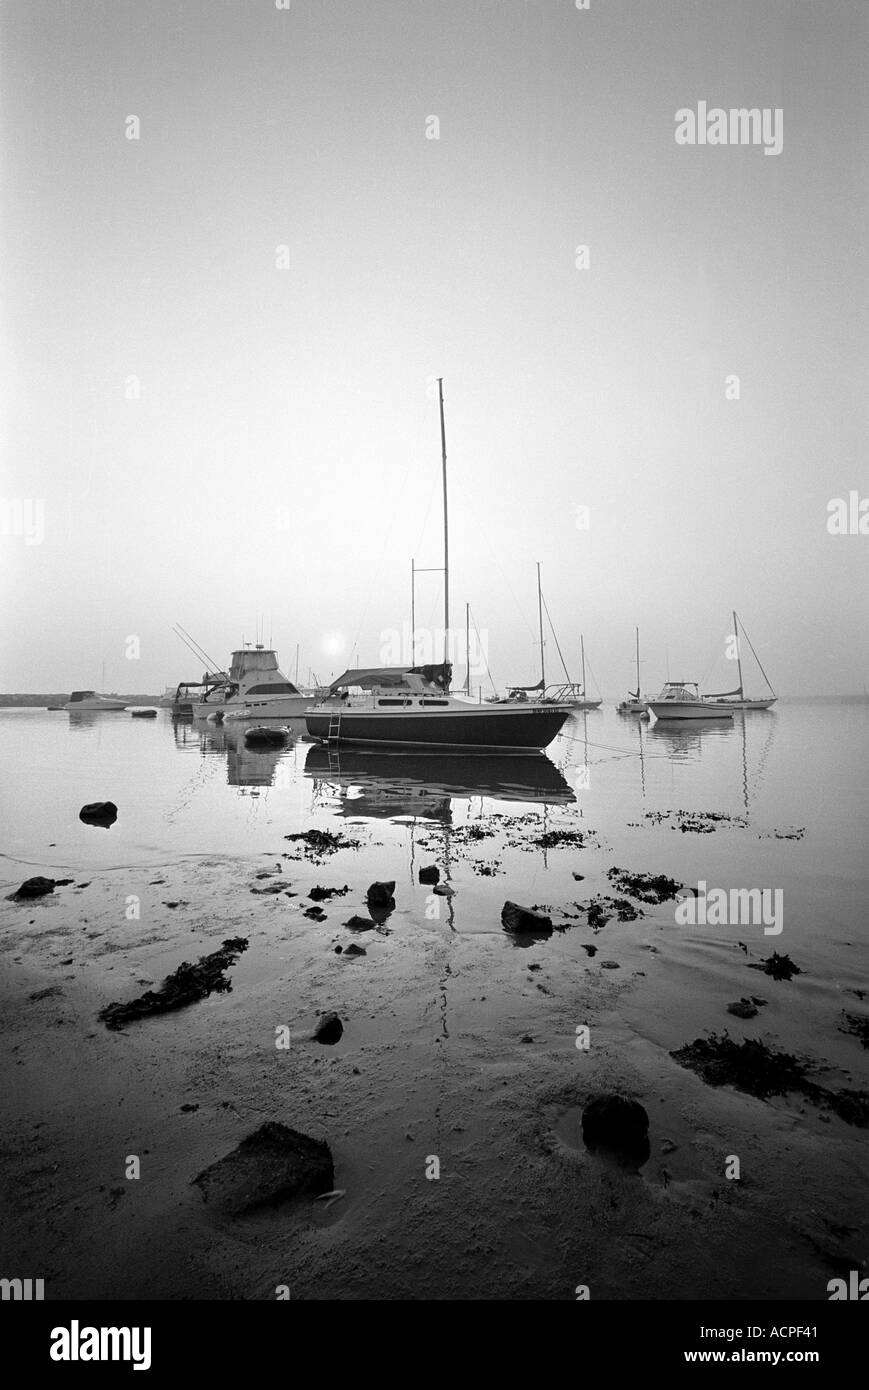 Boote in einer nebligen Einlass Bucht Landschaft Block Island Rhode Island USA Vereinigte Staaten Stockfoto